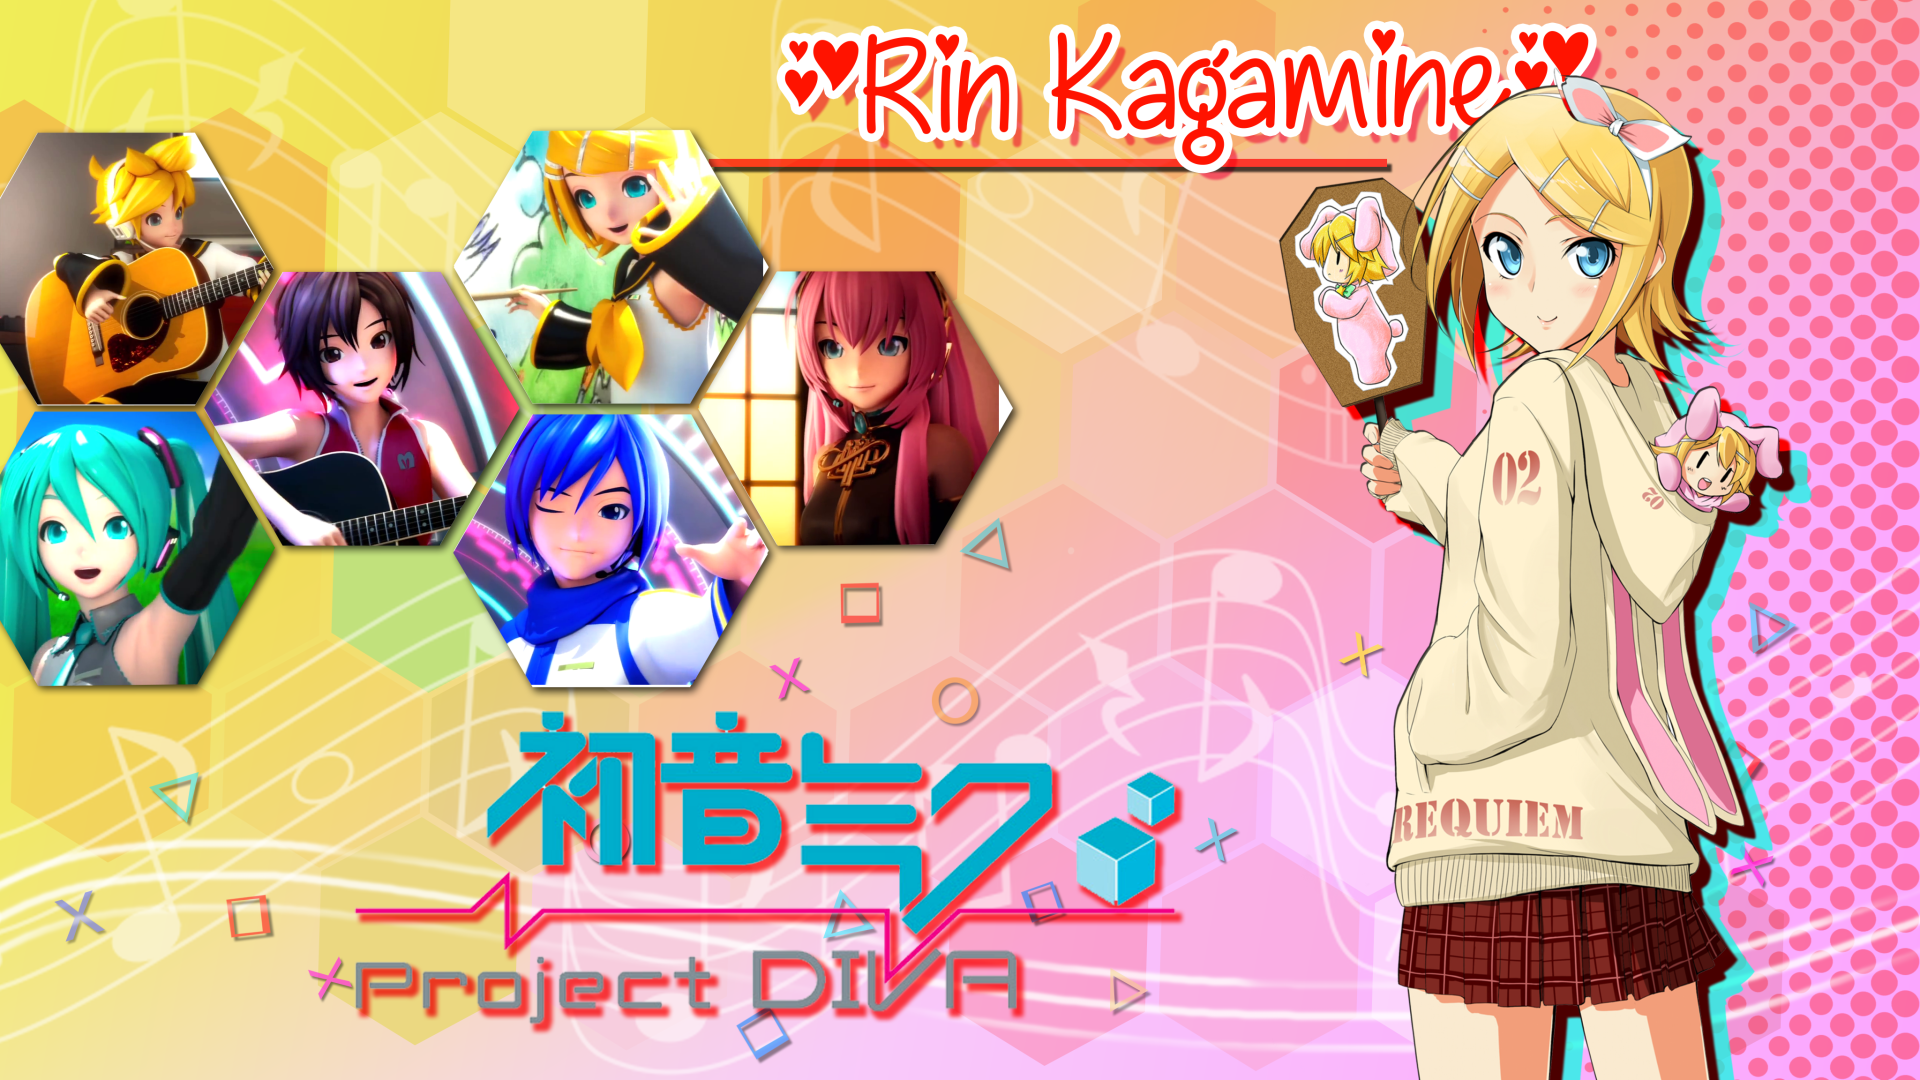 Rin Kagamine Kawai! 4k UltraHD2K4K动漫壁纸欣赏收藏 4096x2304px